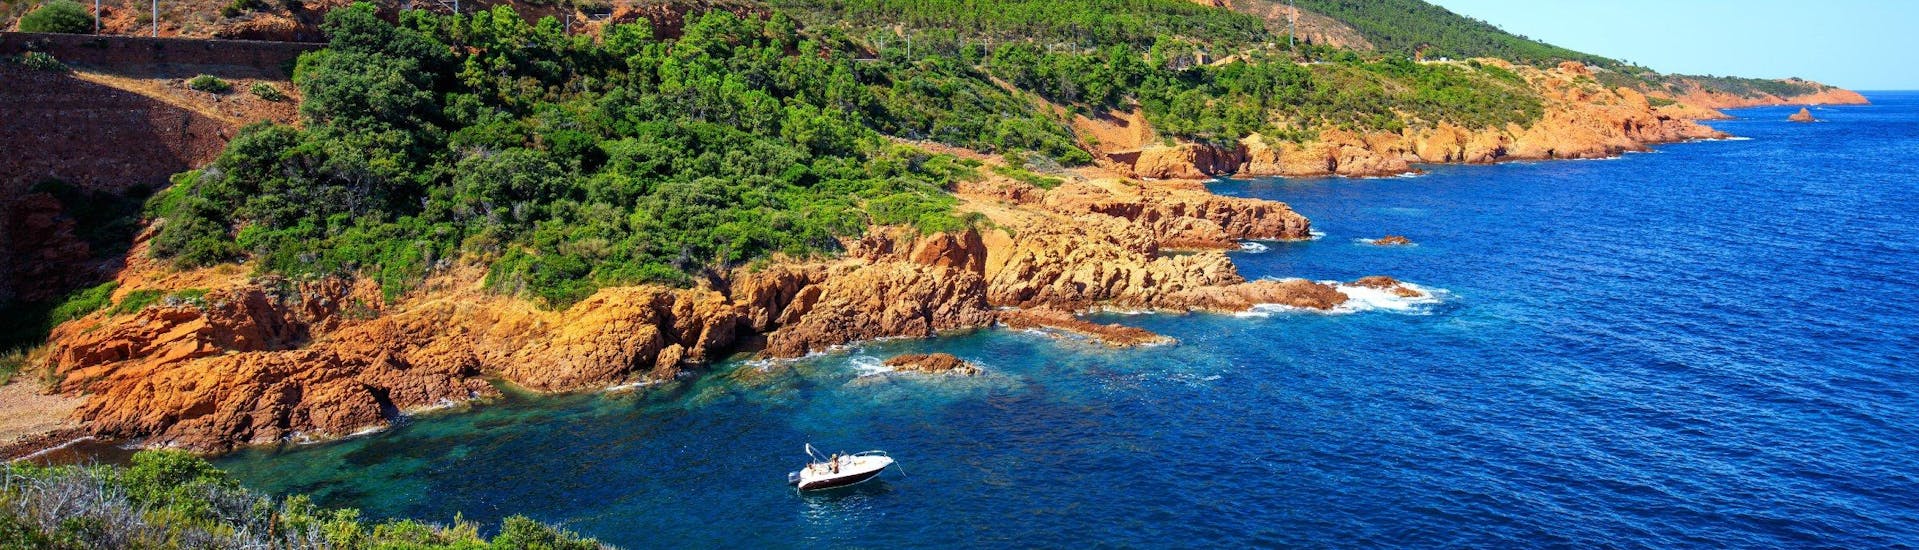 Ein Boot fährt entlang der Küsten des Naturparks L'Estérel, der ein beliebtes Ziel für Bootstouren von Cannes aus ist.